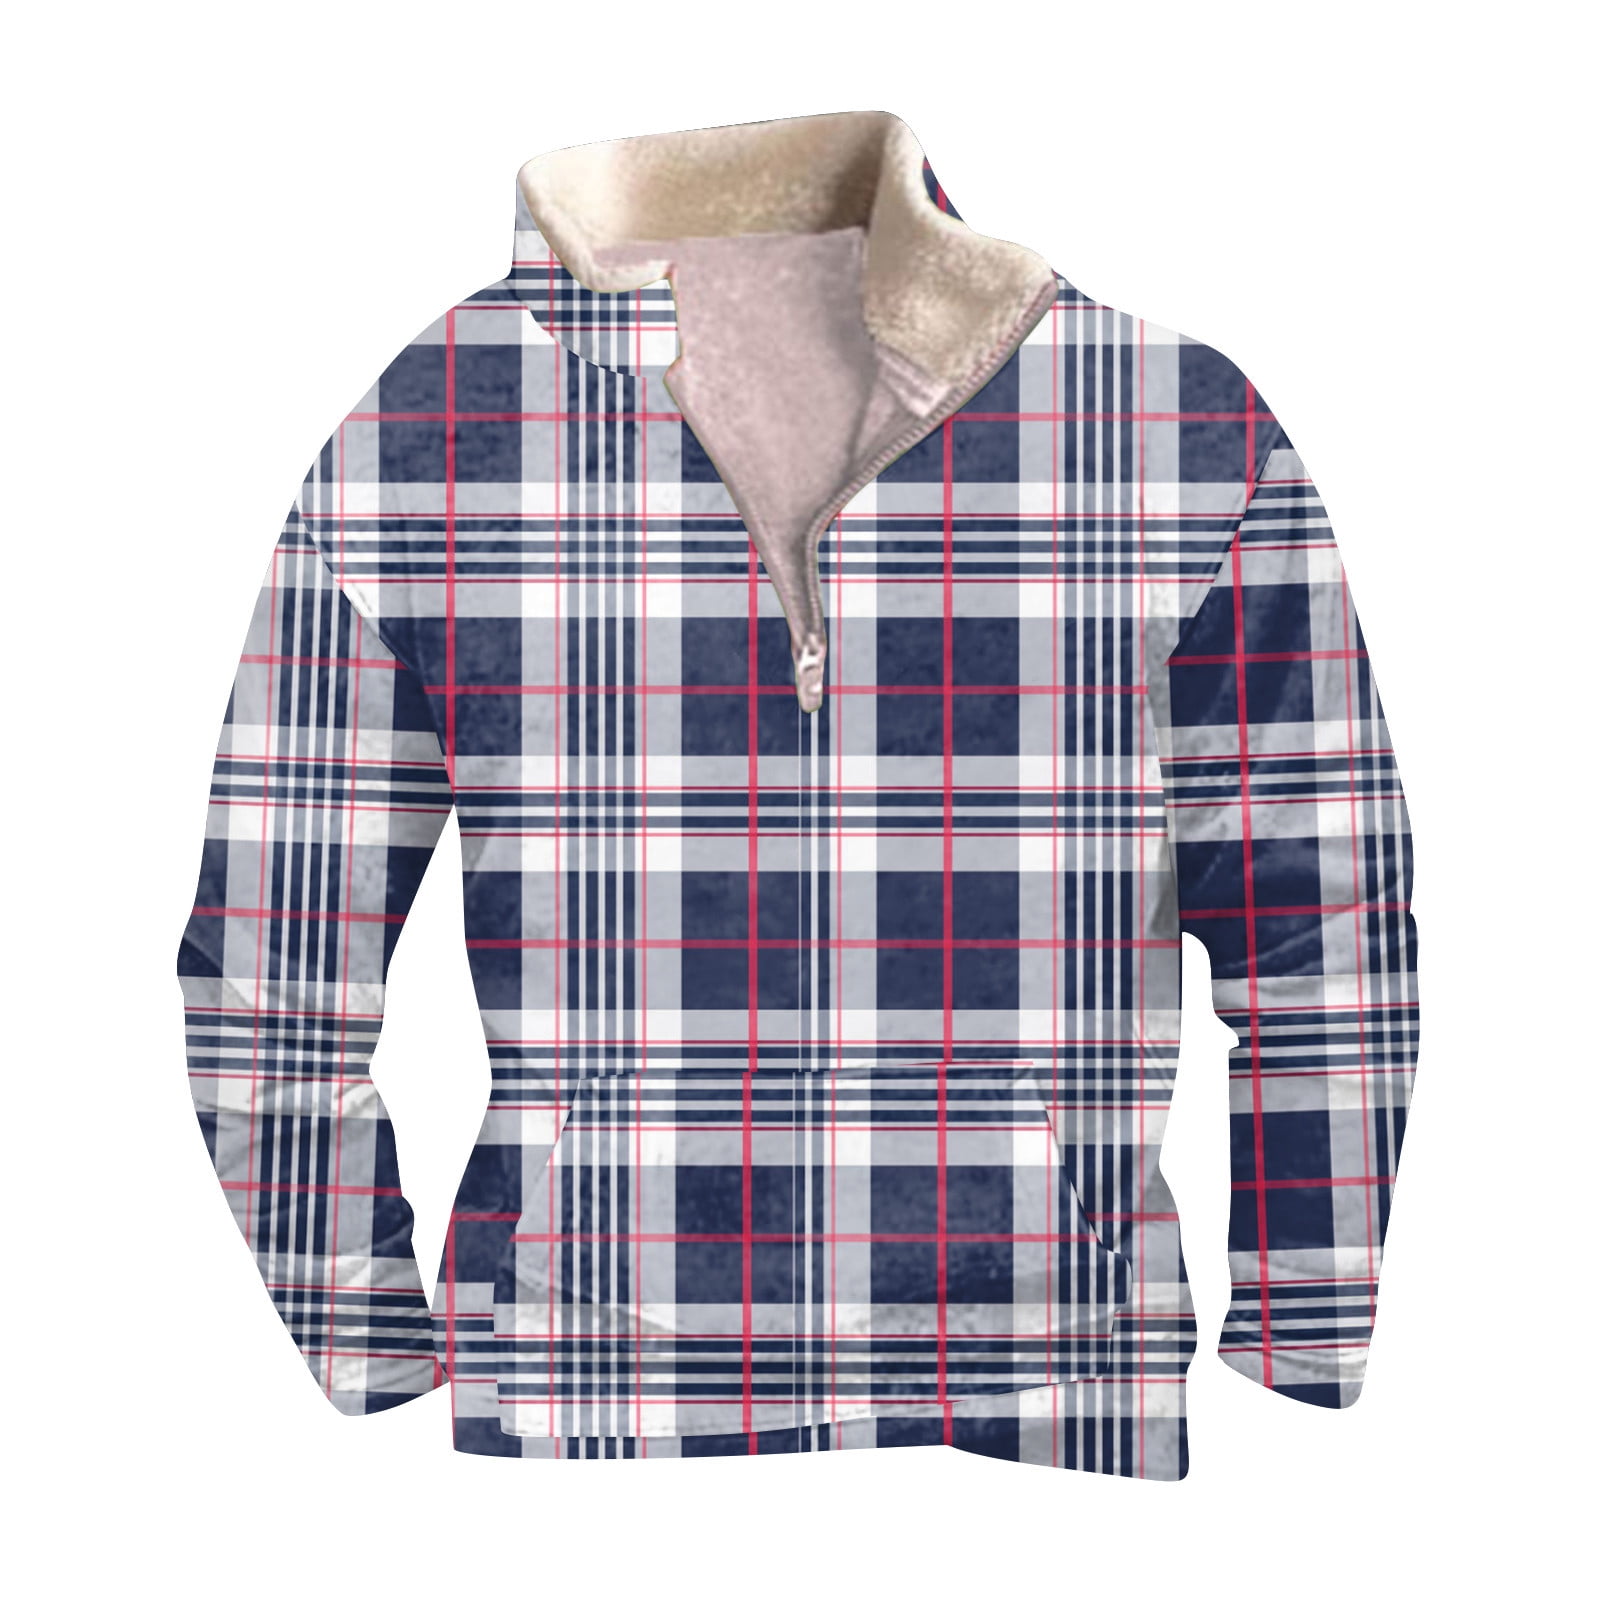 HHeiK Fleece Sweatshirt for Men Stand Collar Pullover Top Long Sleeve ...